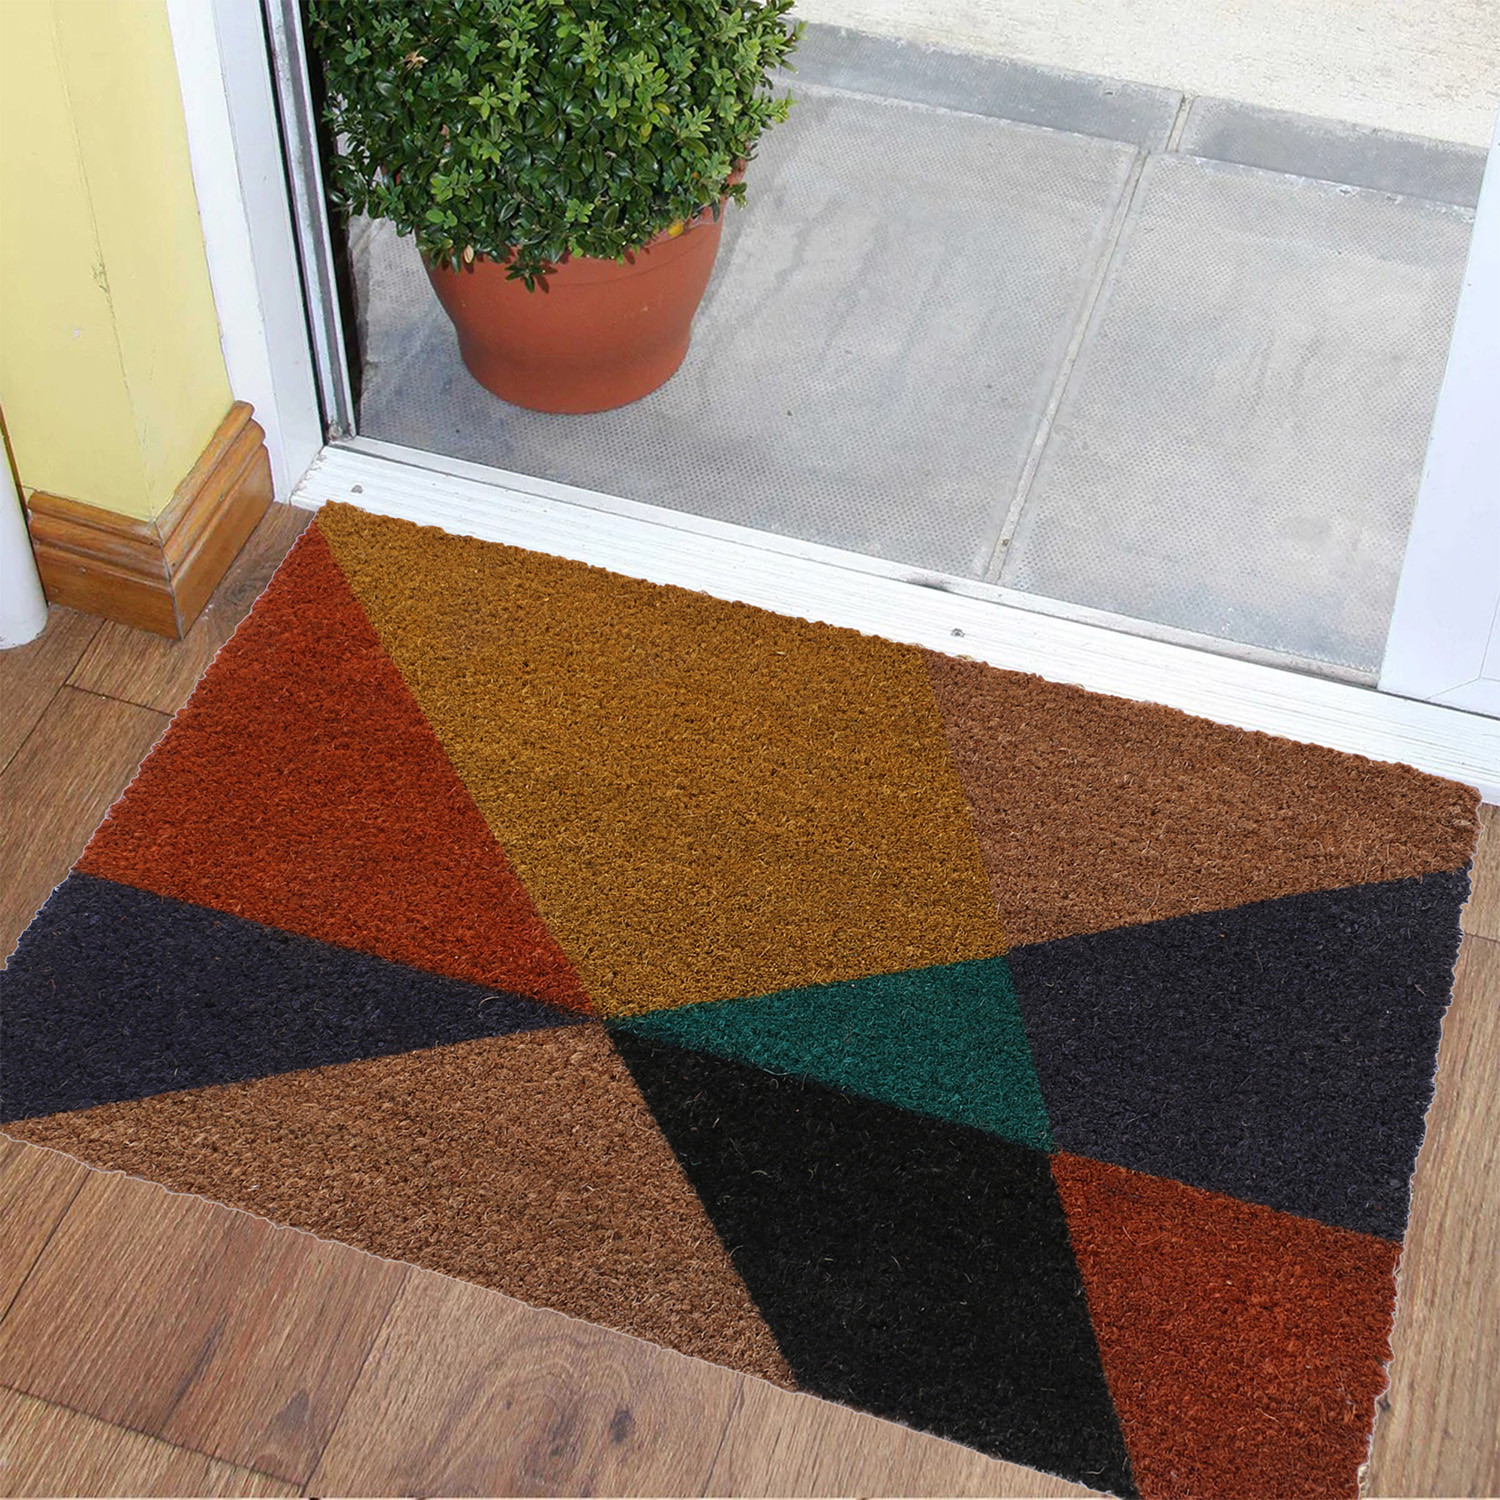 Kuber Industries Door Mat|Polyethylene Durable & Anti-Slip Natural Mini Tringle Print Floor Mat|Rug For Indoor or Outdoor, 30x20 Inch (Brown)